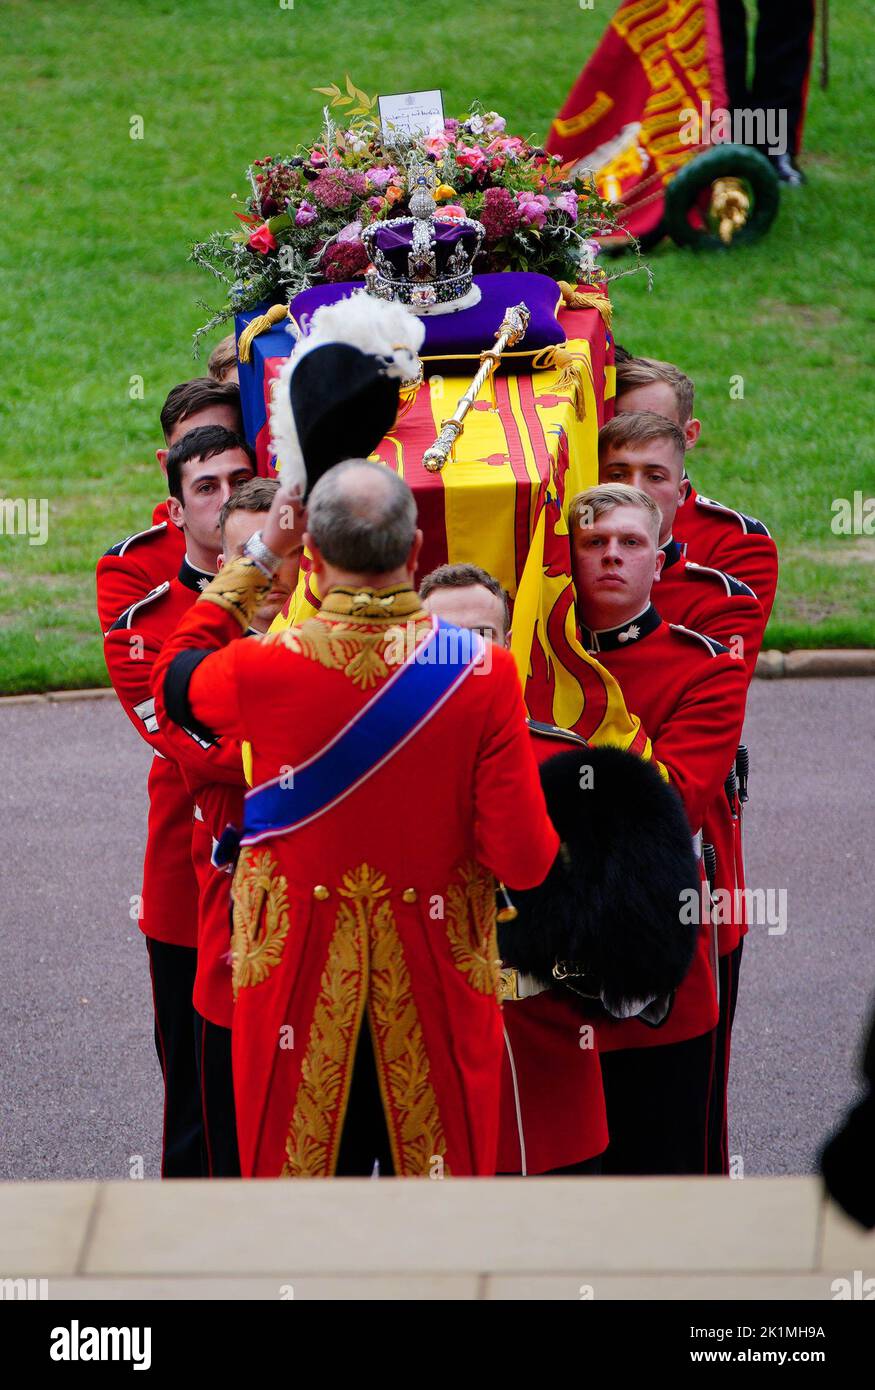 Les porteurs de cercueils transportent le cercueil de la reine Elizabeth II dans la chapelle Saint-Georges du château de Windsor, dans le Berkshire, alors qu'il arrive au service de committal. Date de la photo: Lundi 19 septembre 2022. Banque D'Images